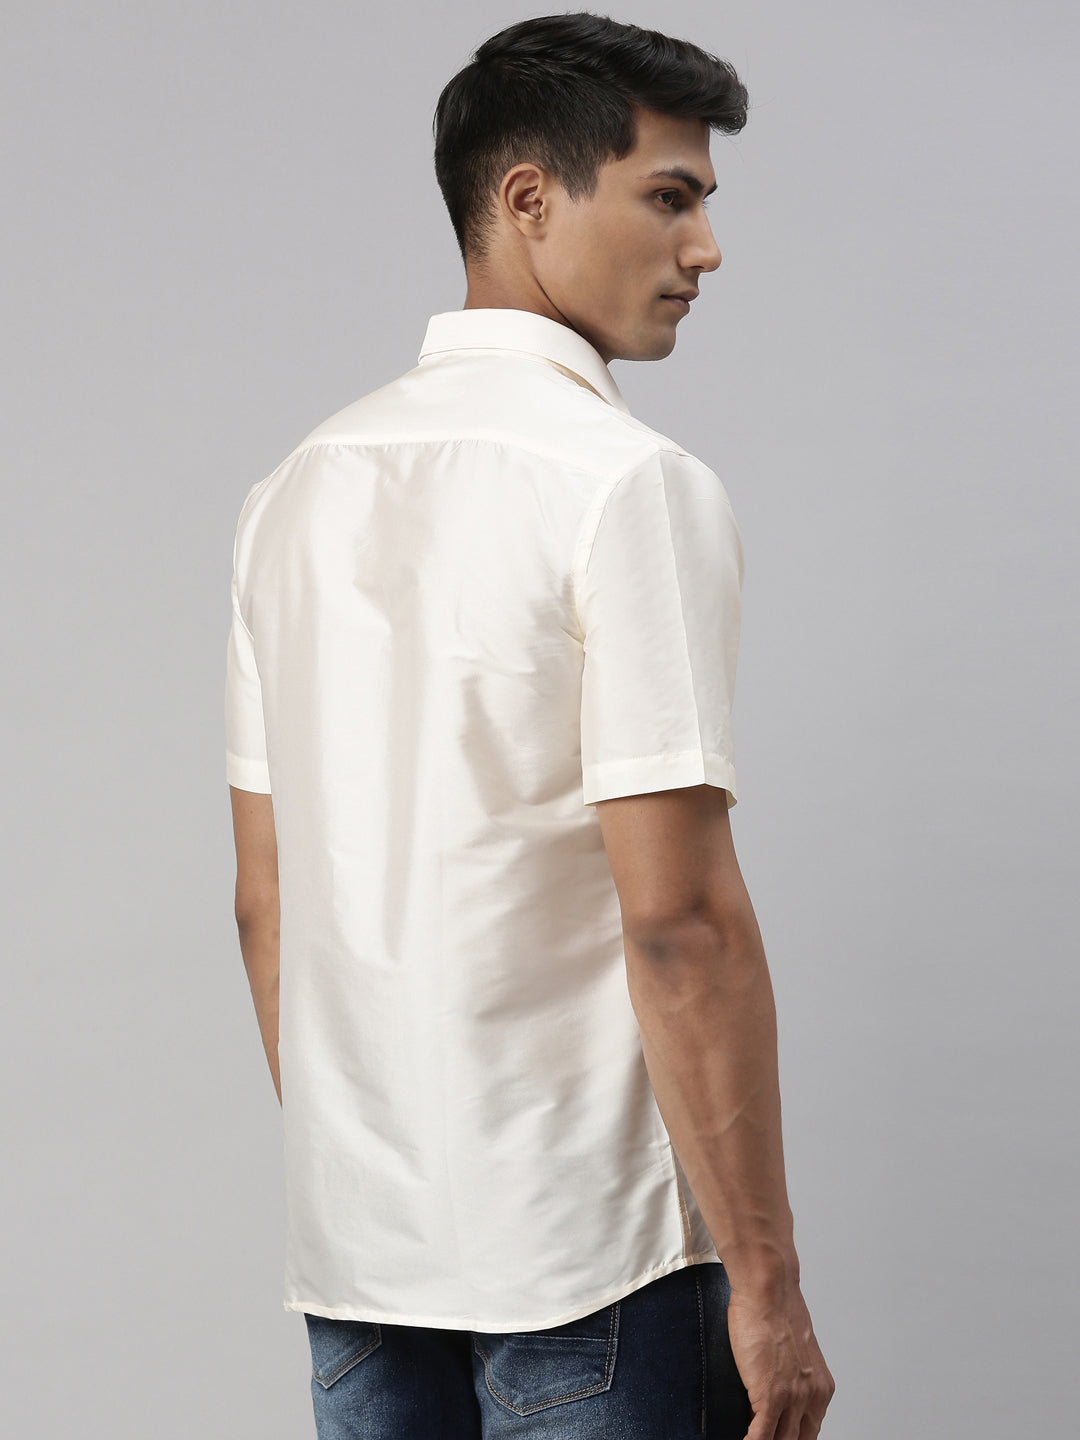 Tattva Mens White Colour Half sleeve Shirt